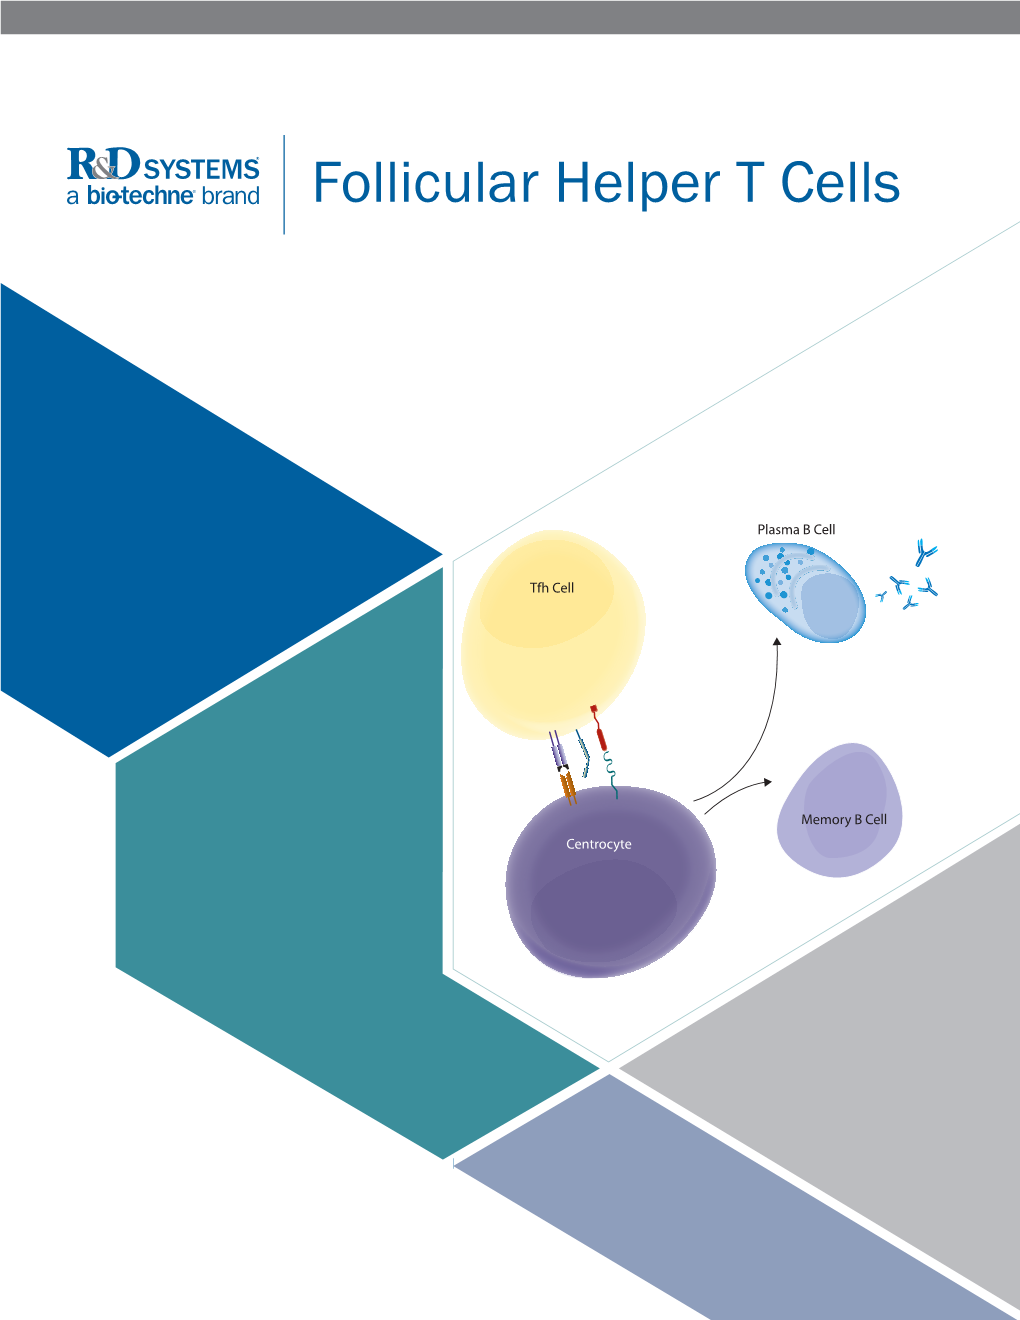 Follicular Helper T Cells